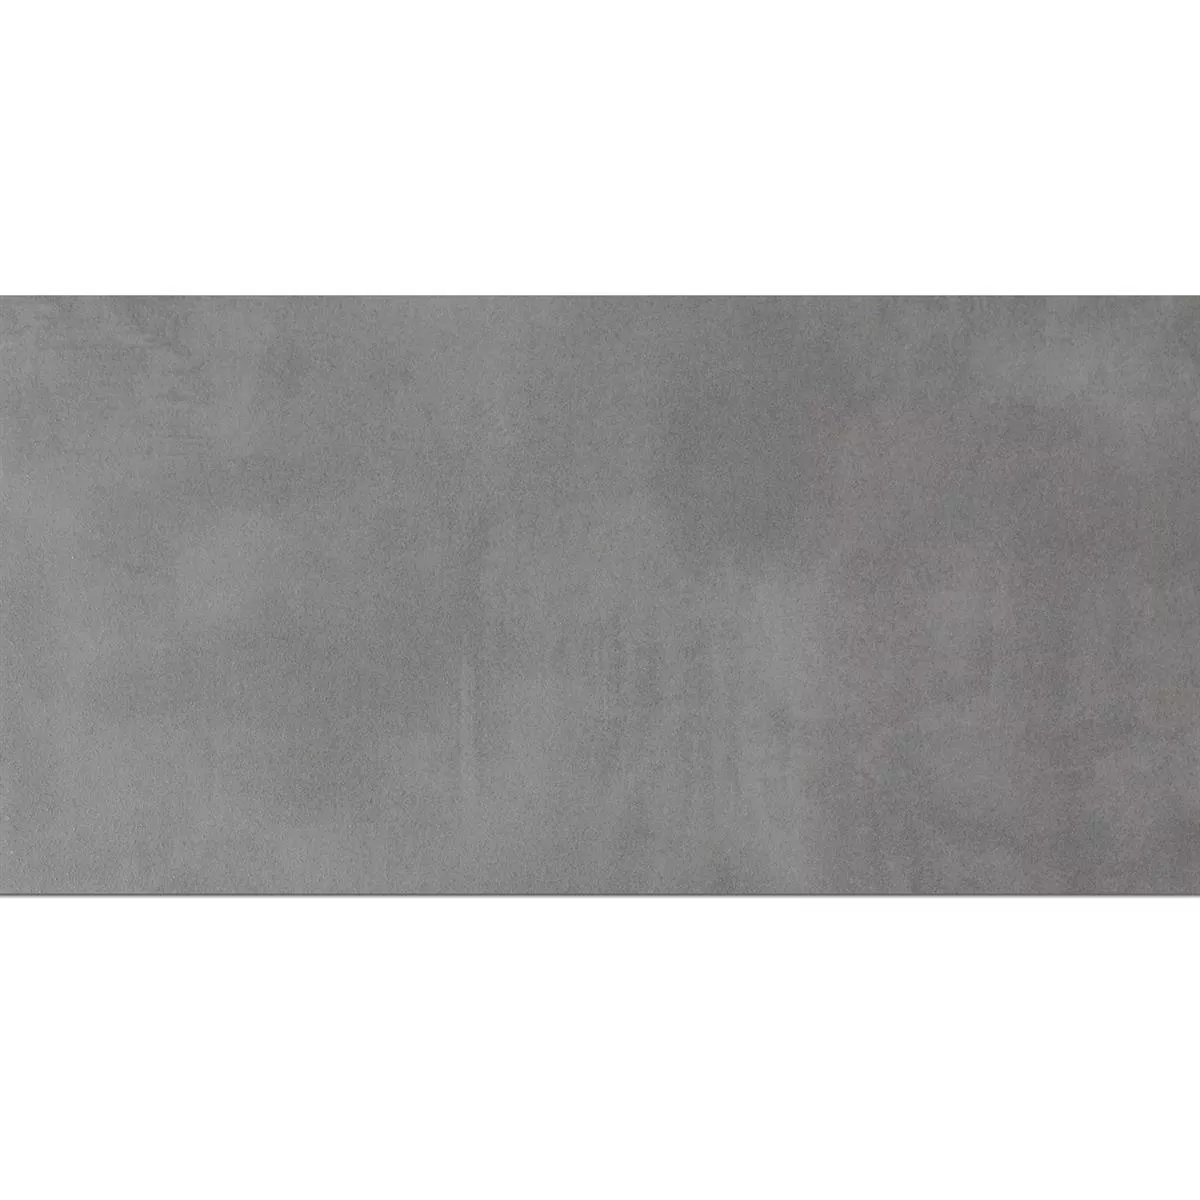 Campione Piastrella Esterni Zeus Cemento Ottica Grey 30x60cm